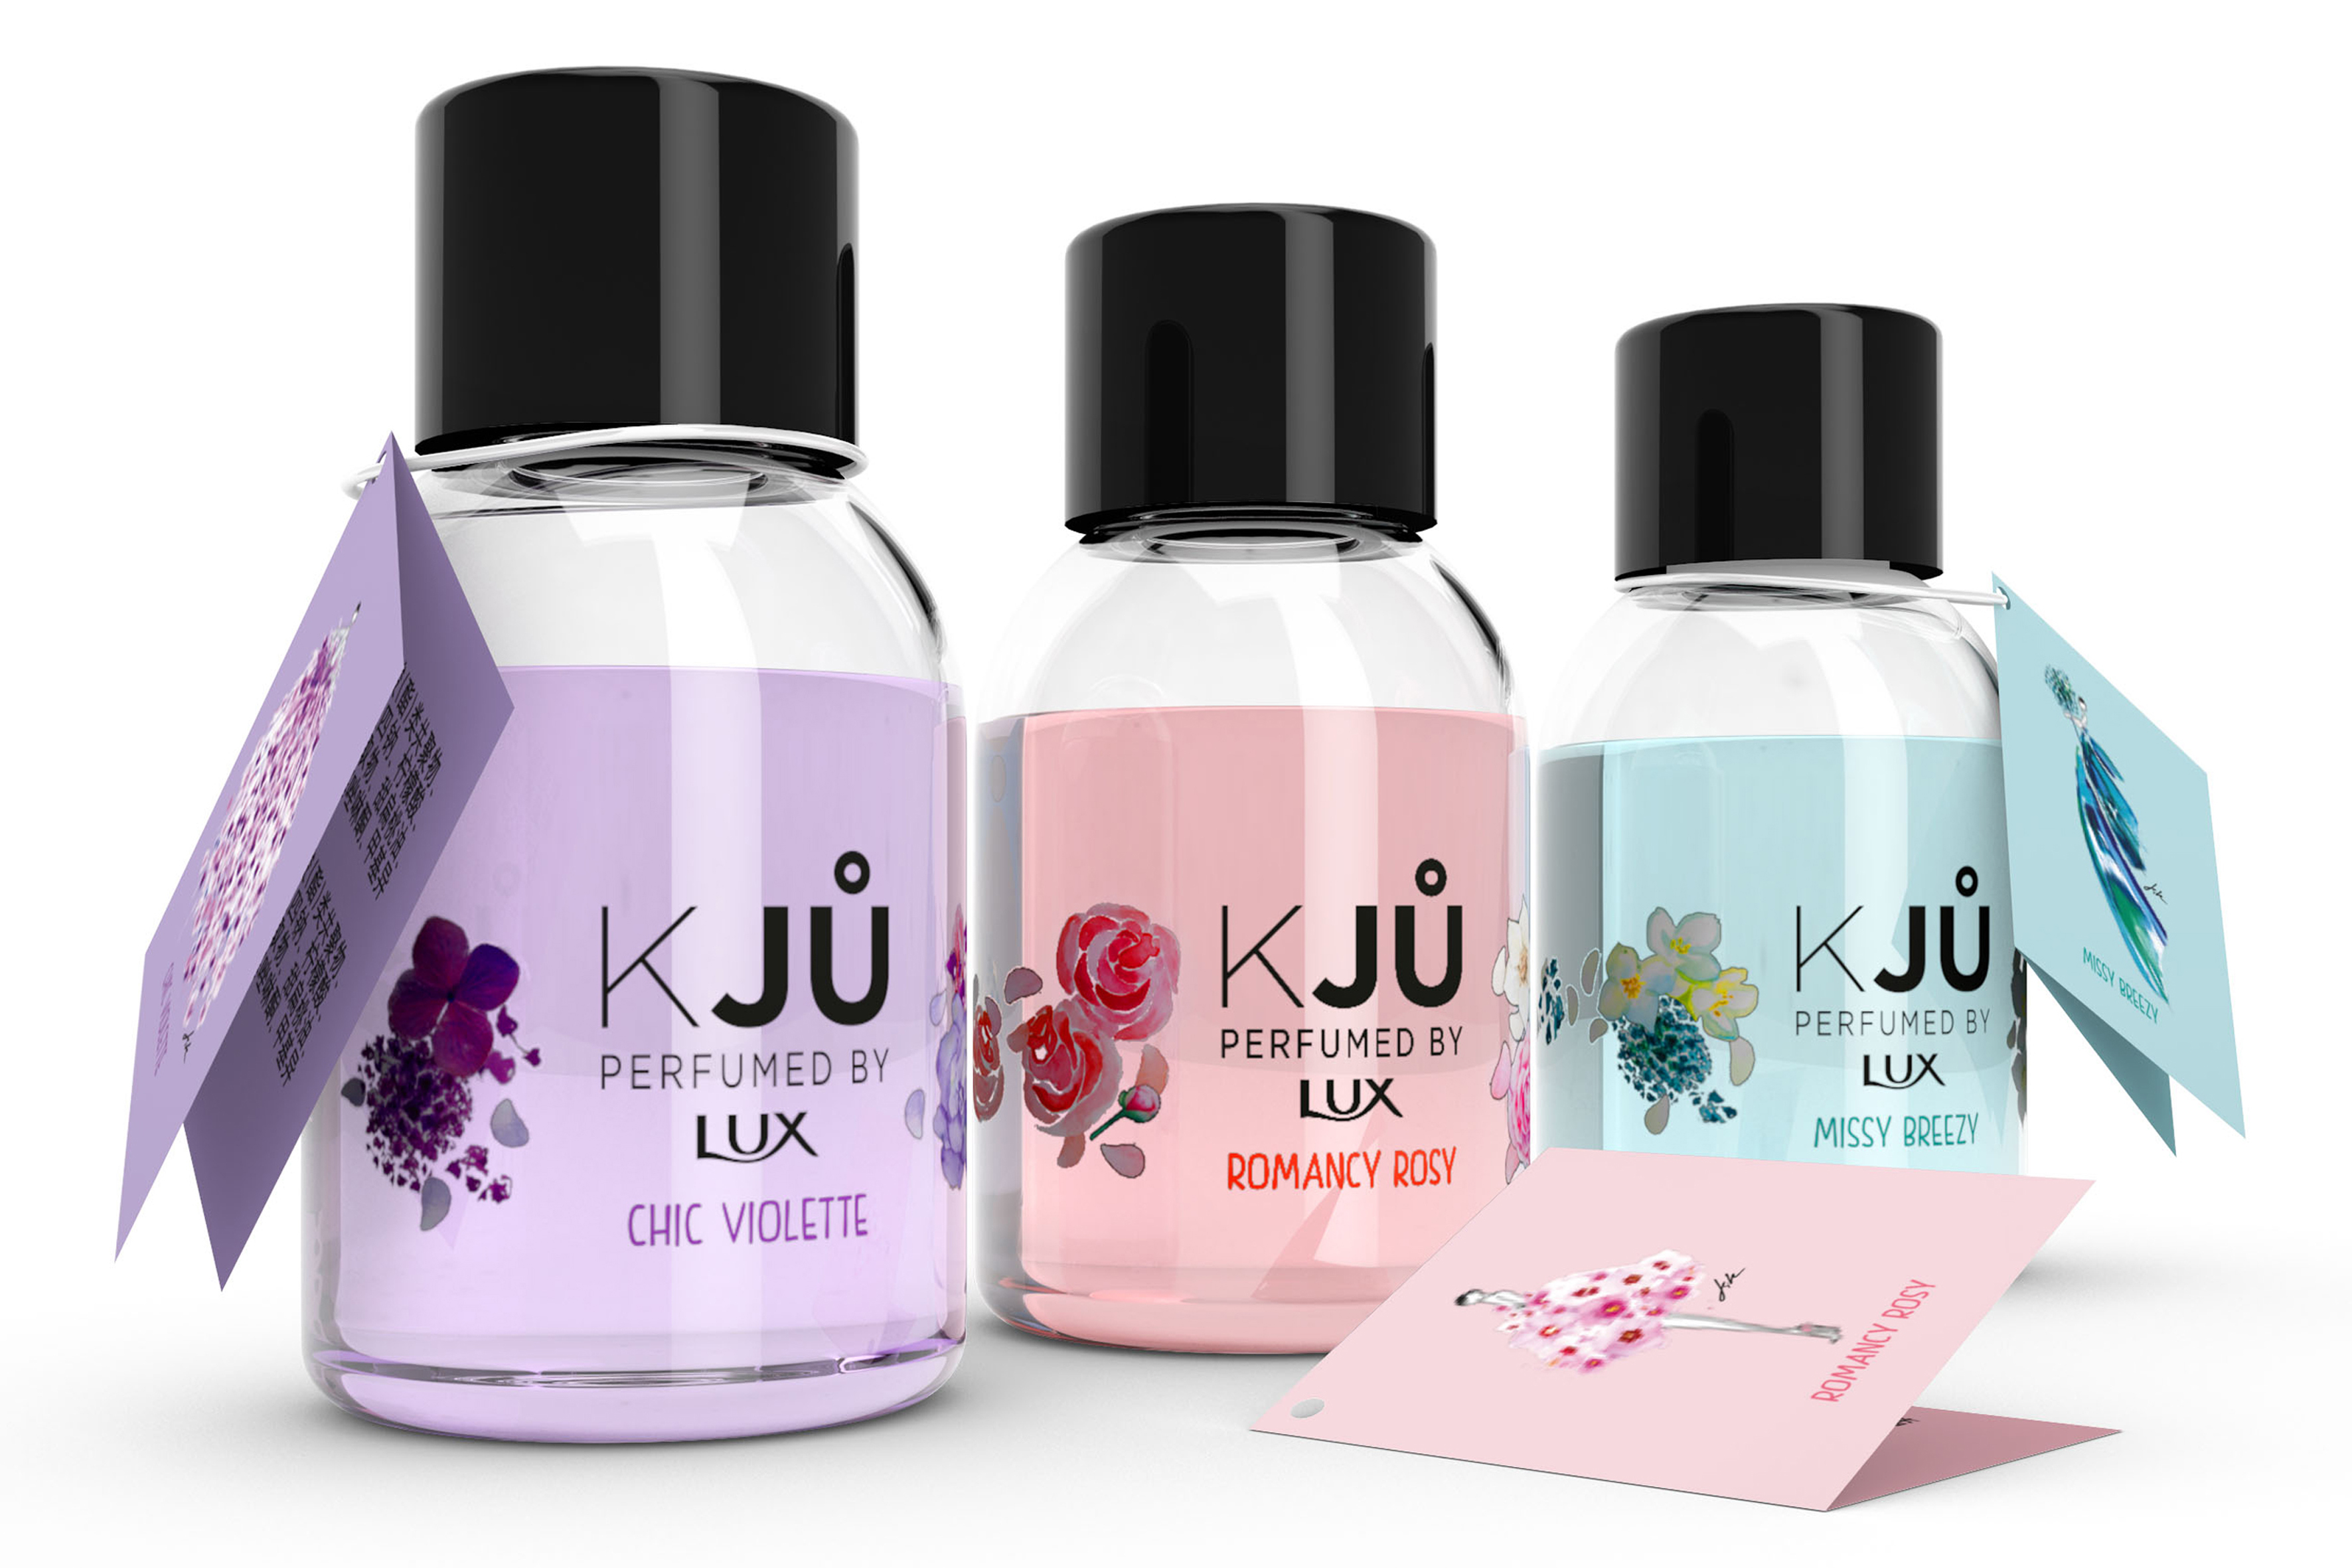 KJU by Lux image 04